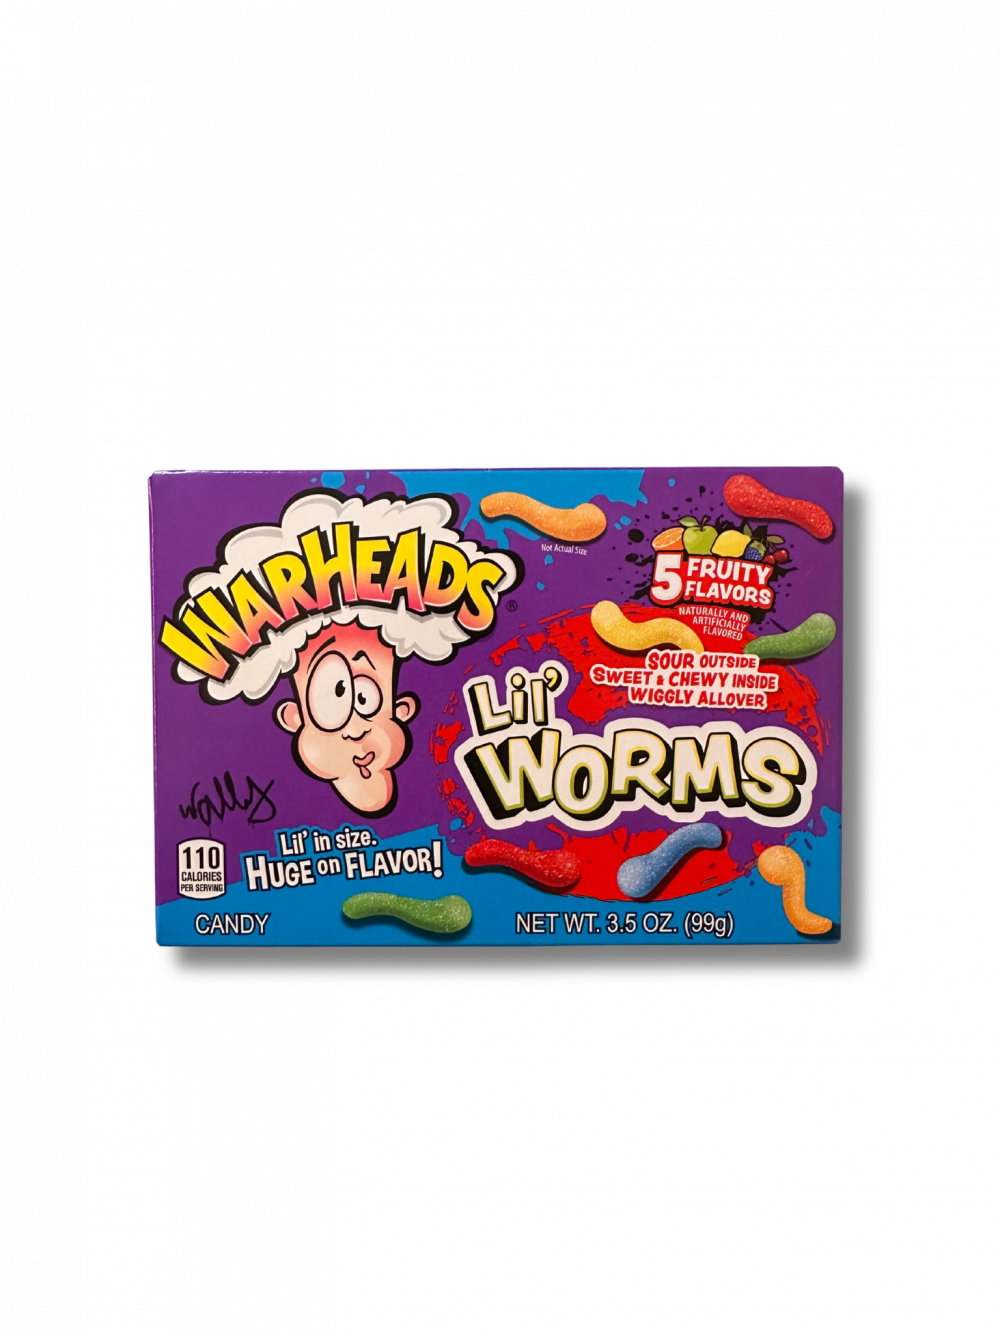 Warheads Worms sind saure Gummis, die einen unerwarteten Geschmackskick liefern. Diese farbenfrohen Würmer mit ihrer süßen und sauren Geschmackskombination sind ein beliebter Snack für Jung und Alt. […] - Breddas Hemp & Sweets Company Wuppertal